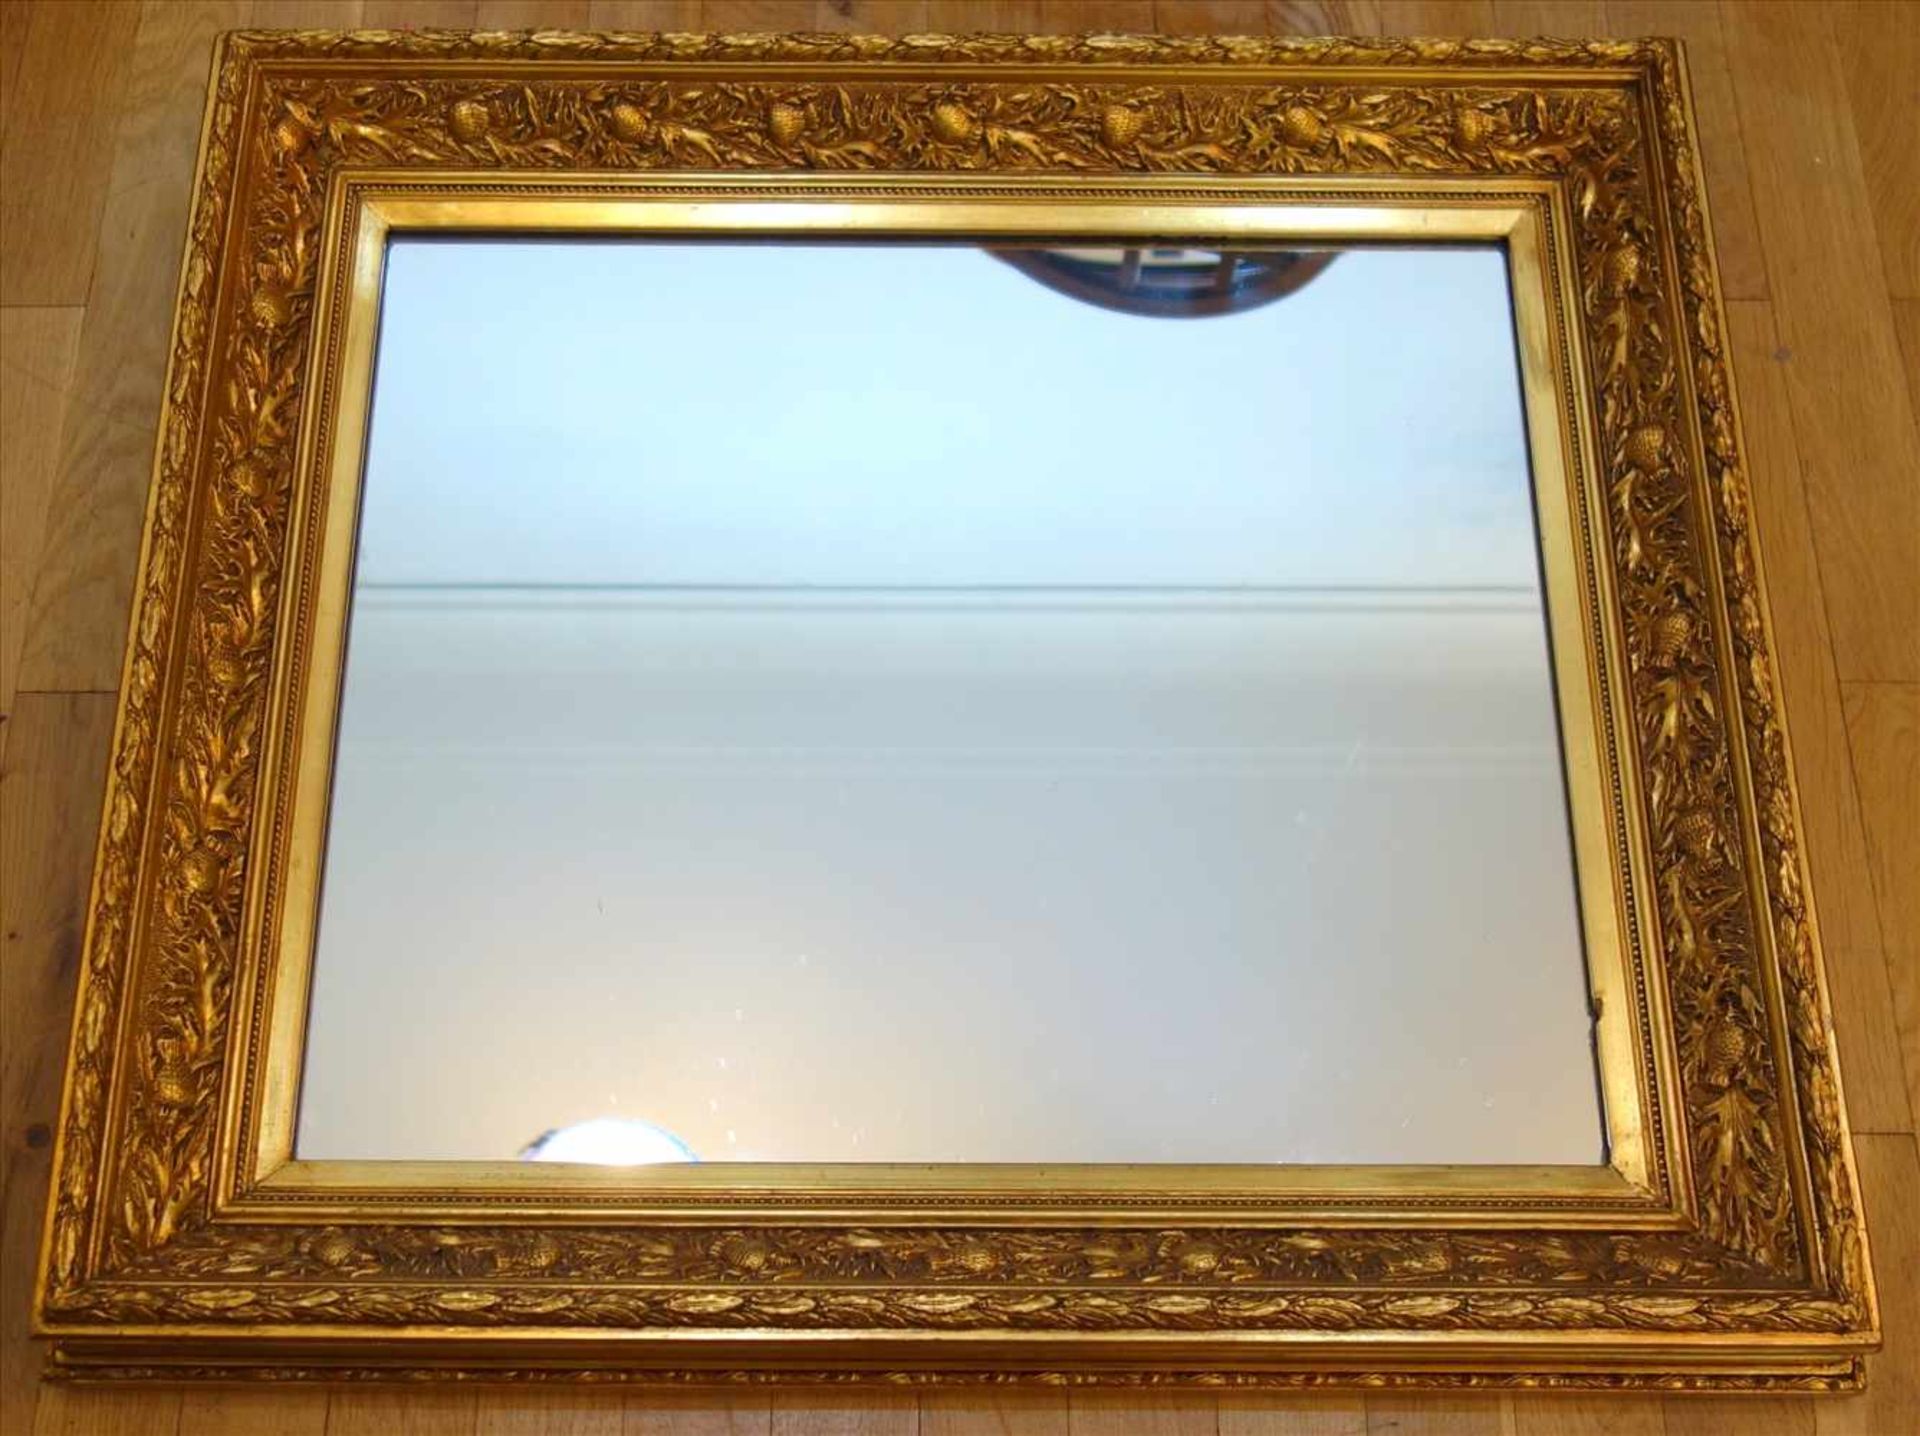 Spiegel mit Goldstuckrahmen, Historismus, umlaufende Lorbeerblattranken, innen große umlaufende